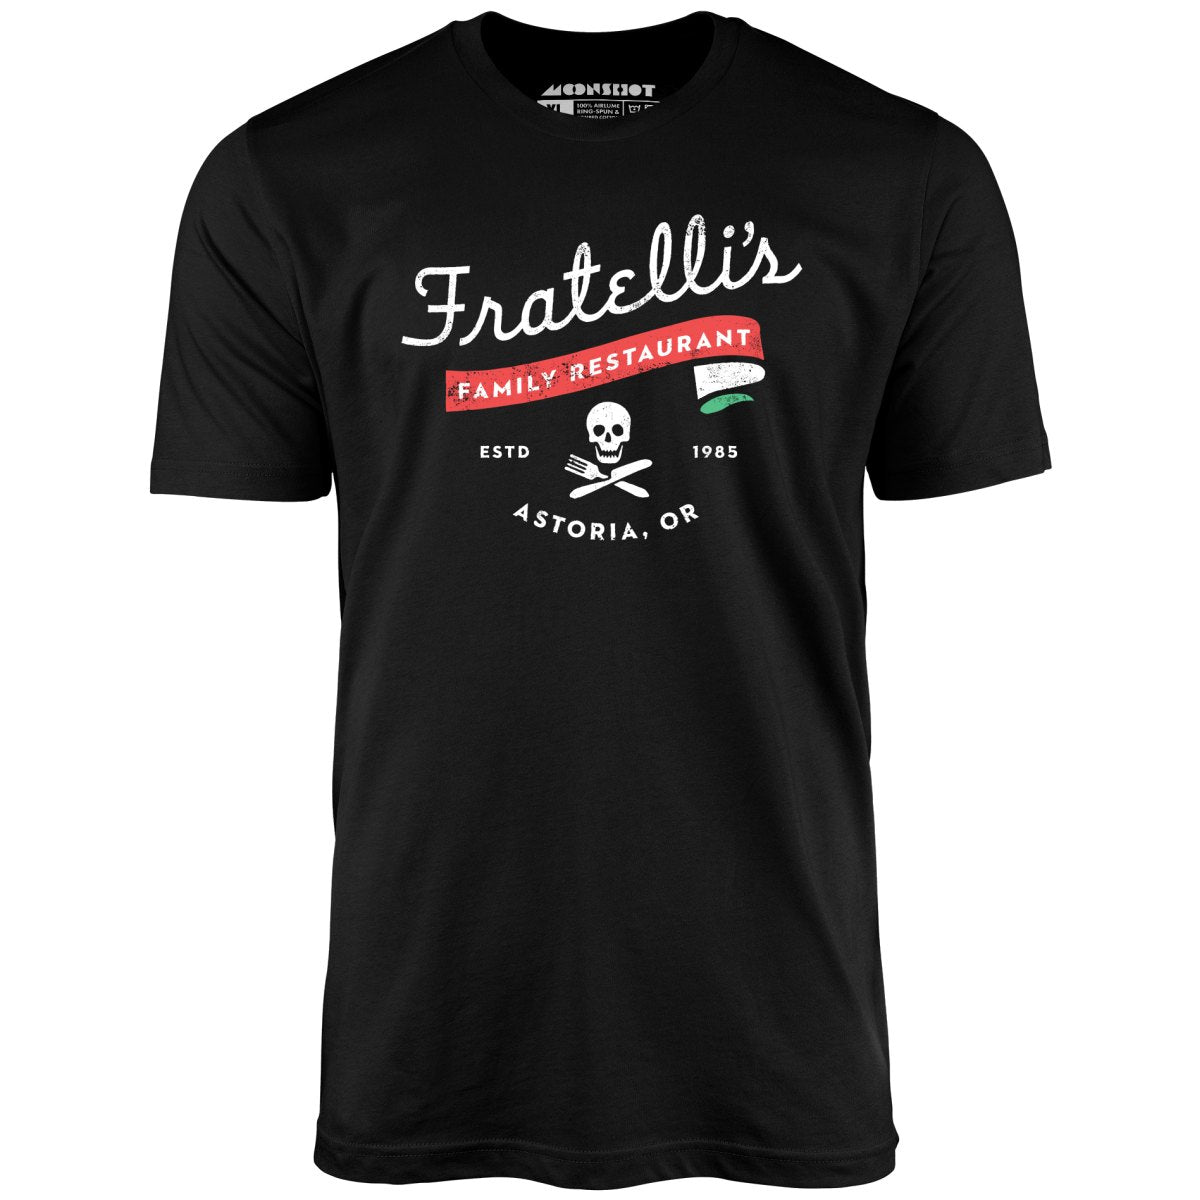 Fratelli's Family Restaurant - Unisex T-Shirt – m00nshot